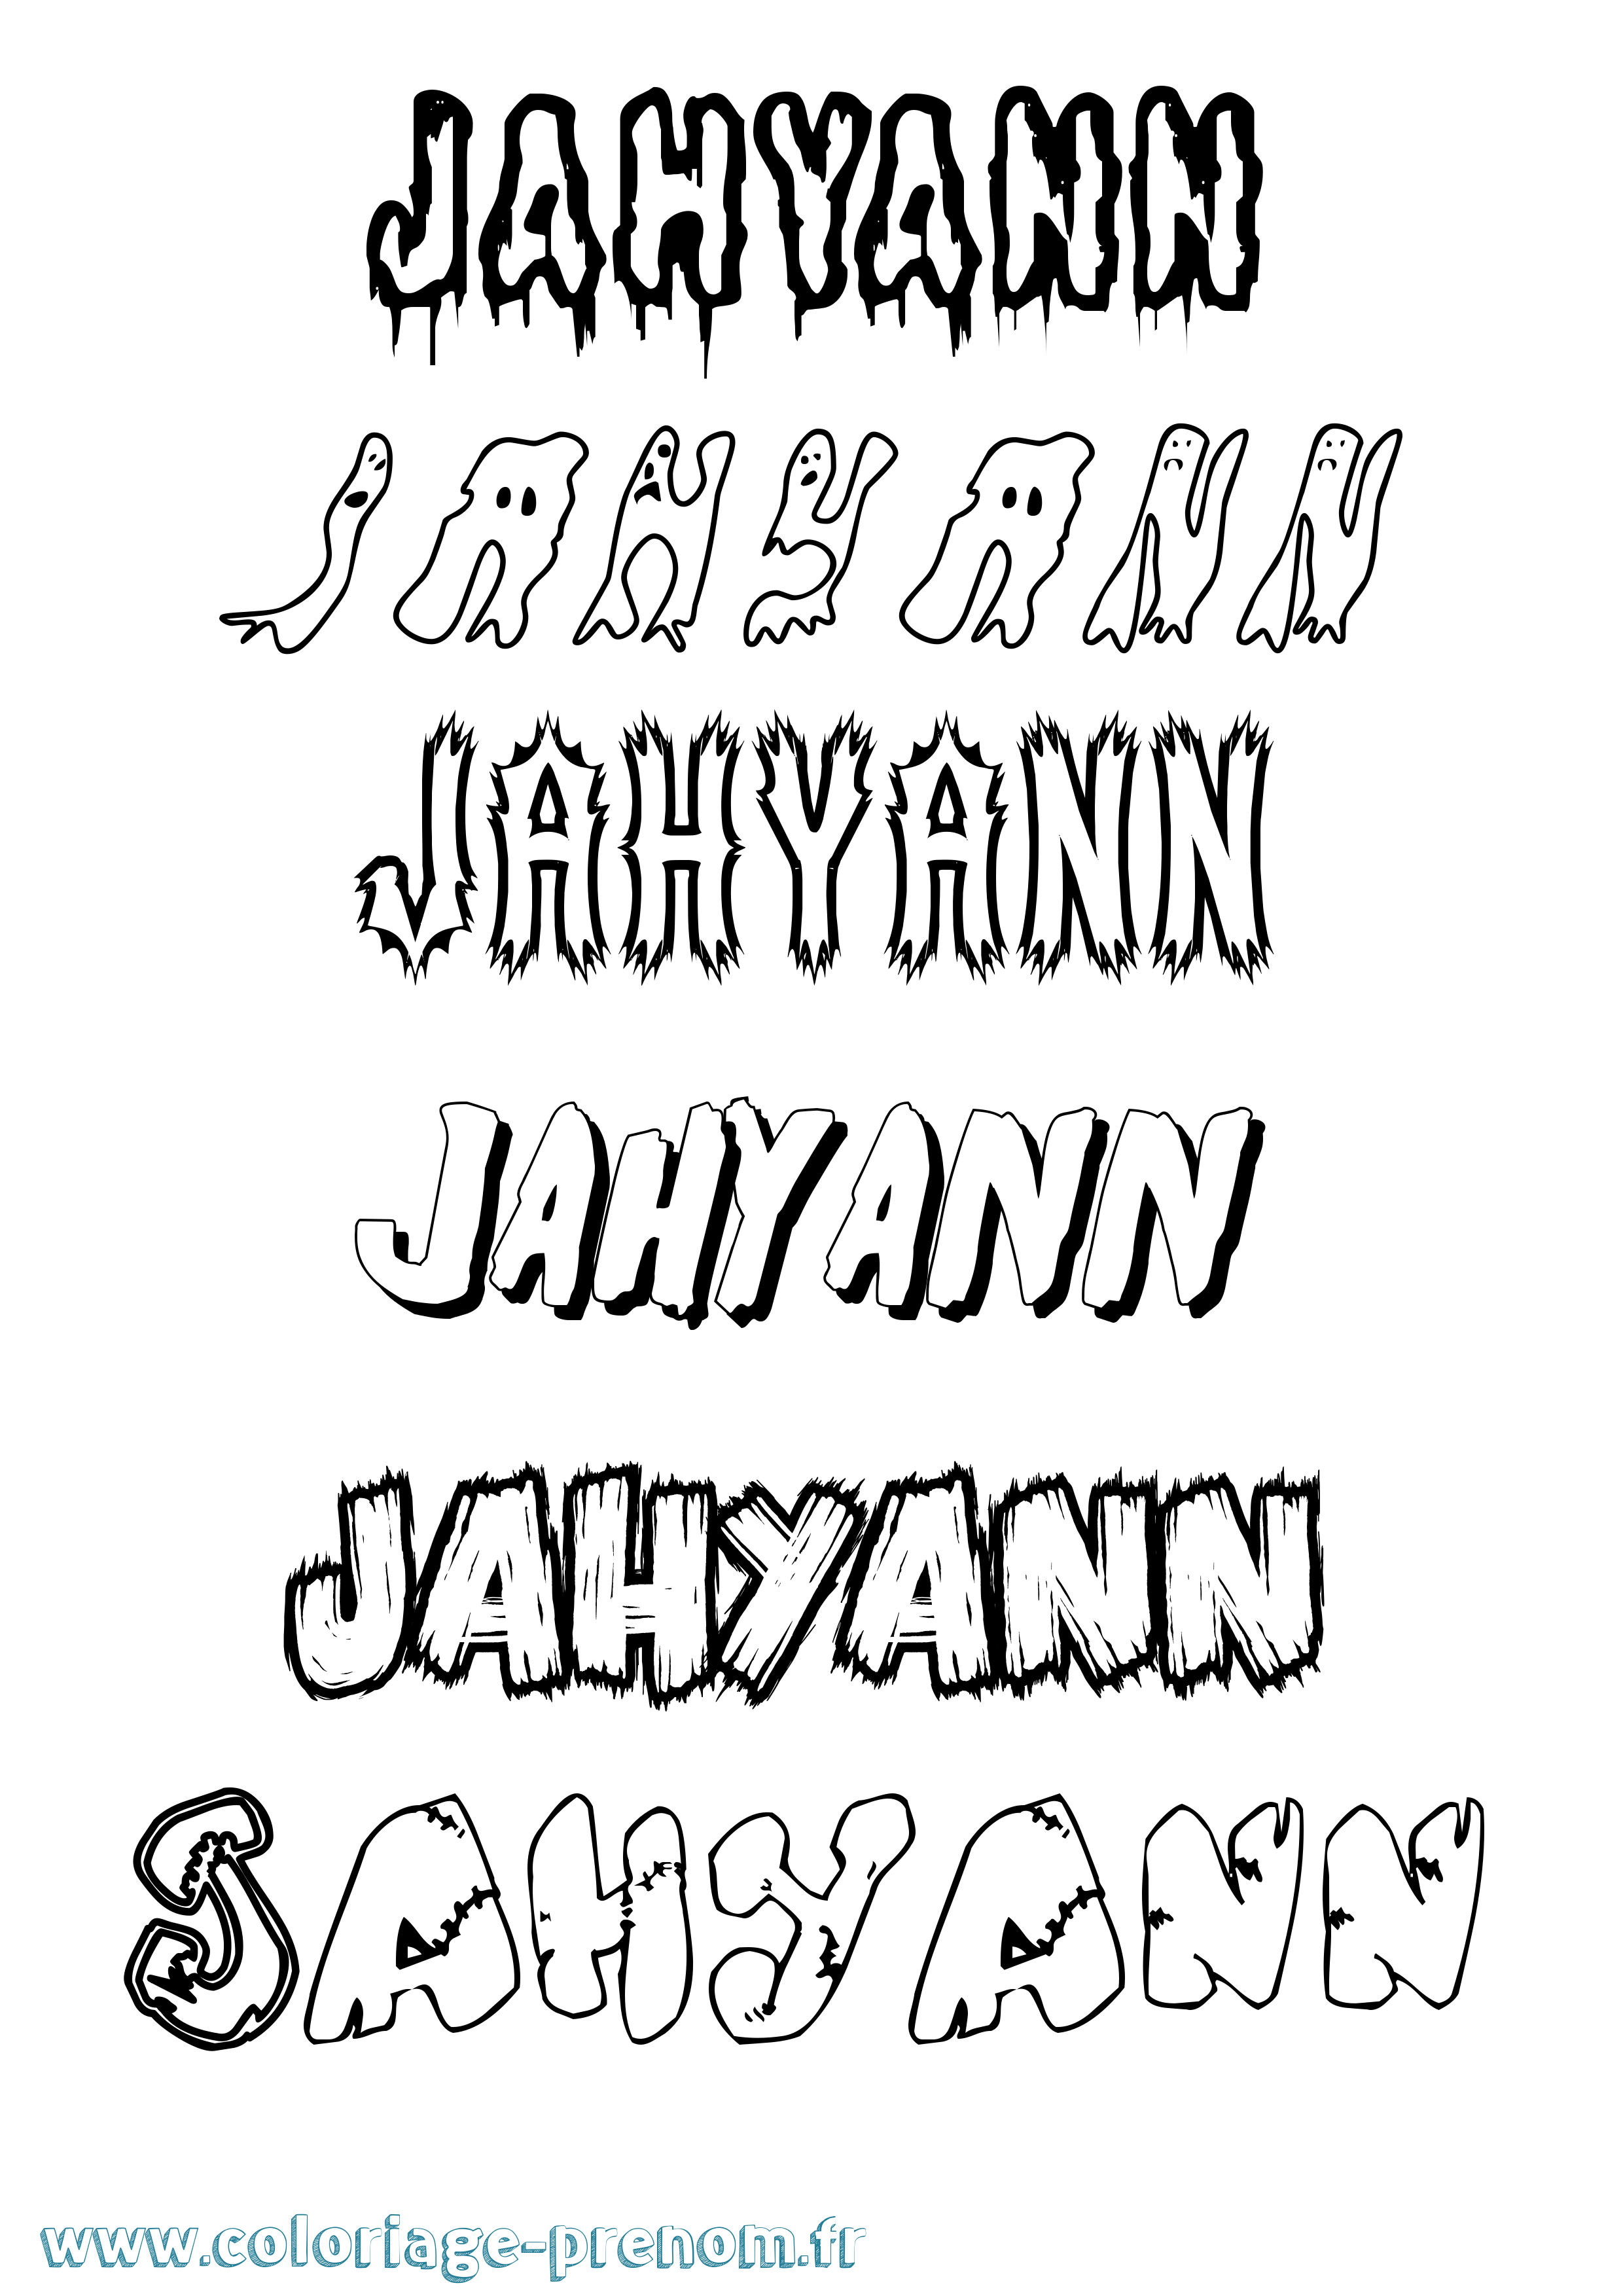 Coloriage prénom Jahyann Frisson